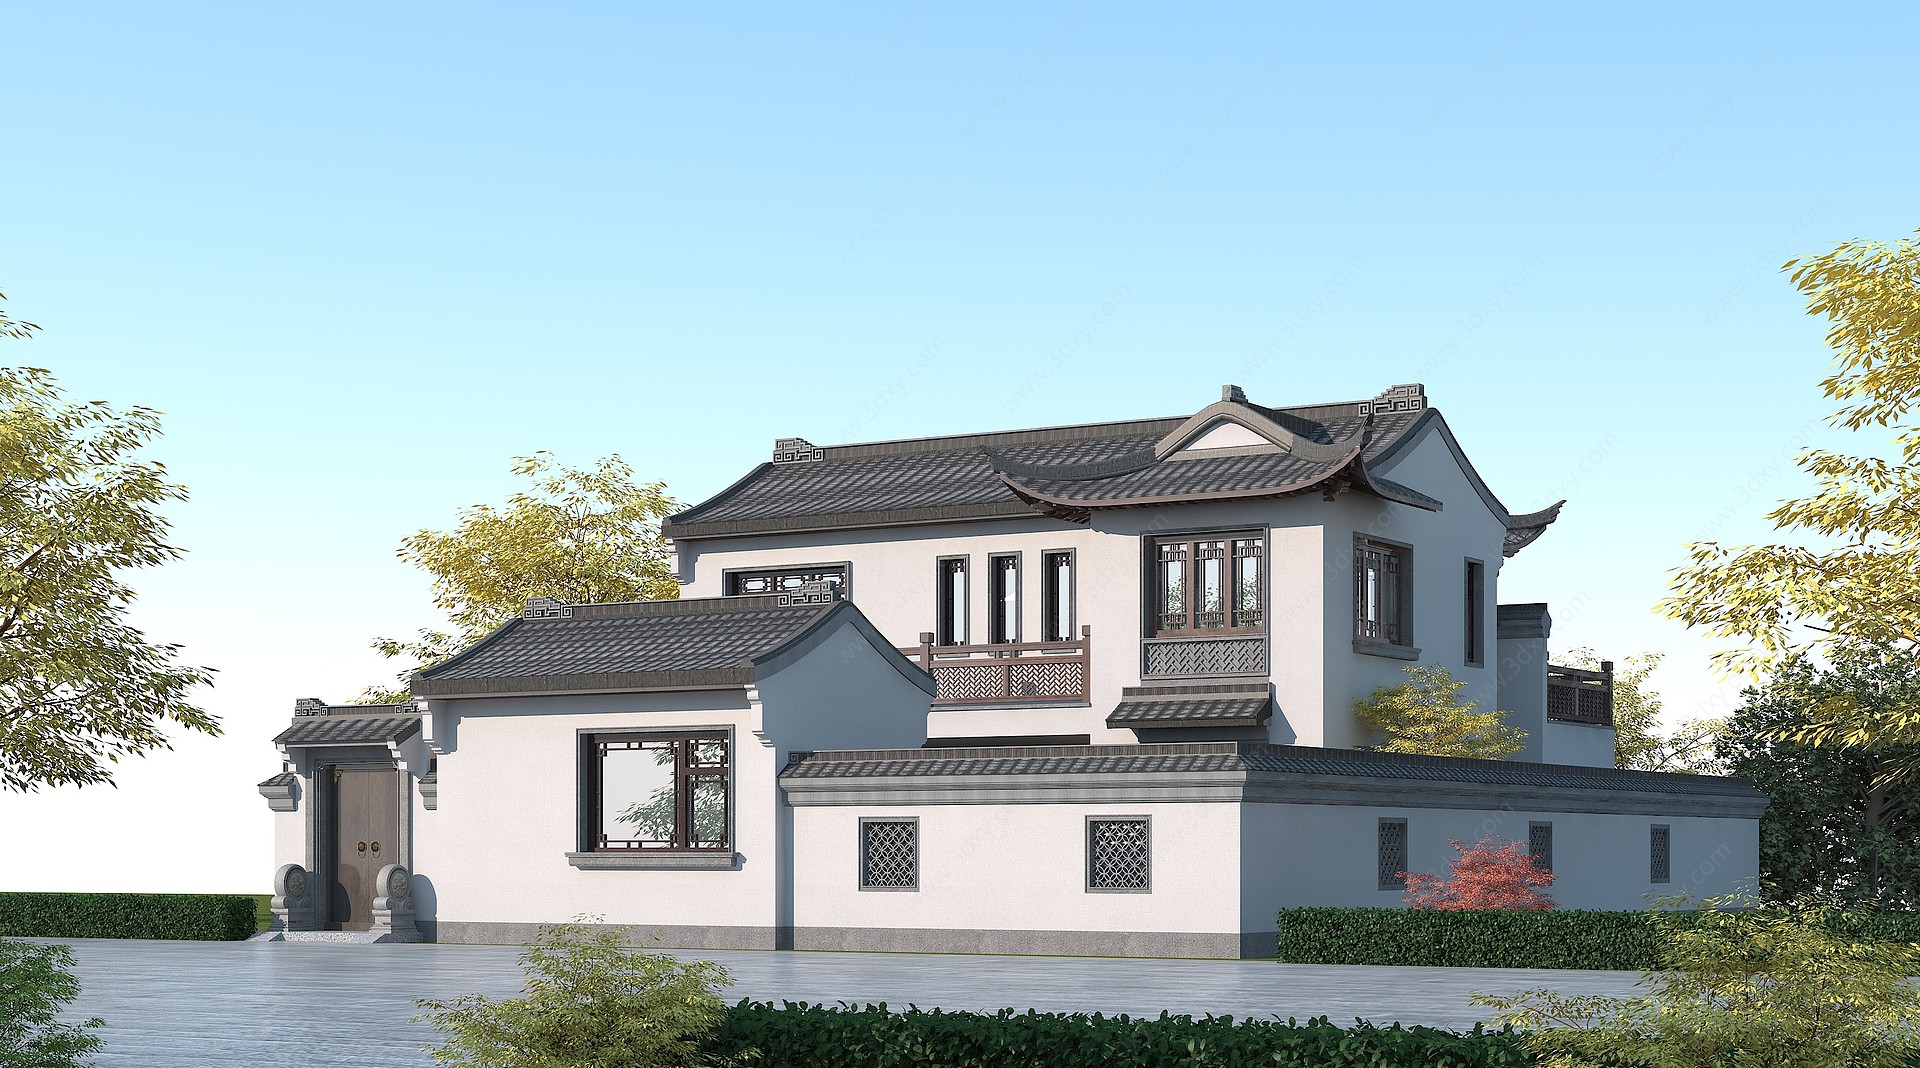 中式别墅徽派建筑3D模型